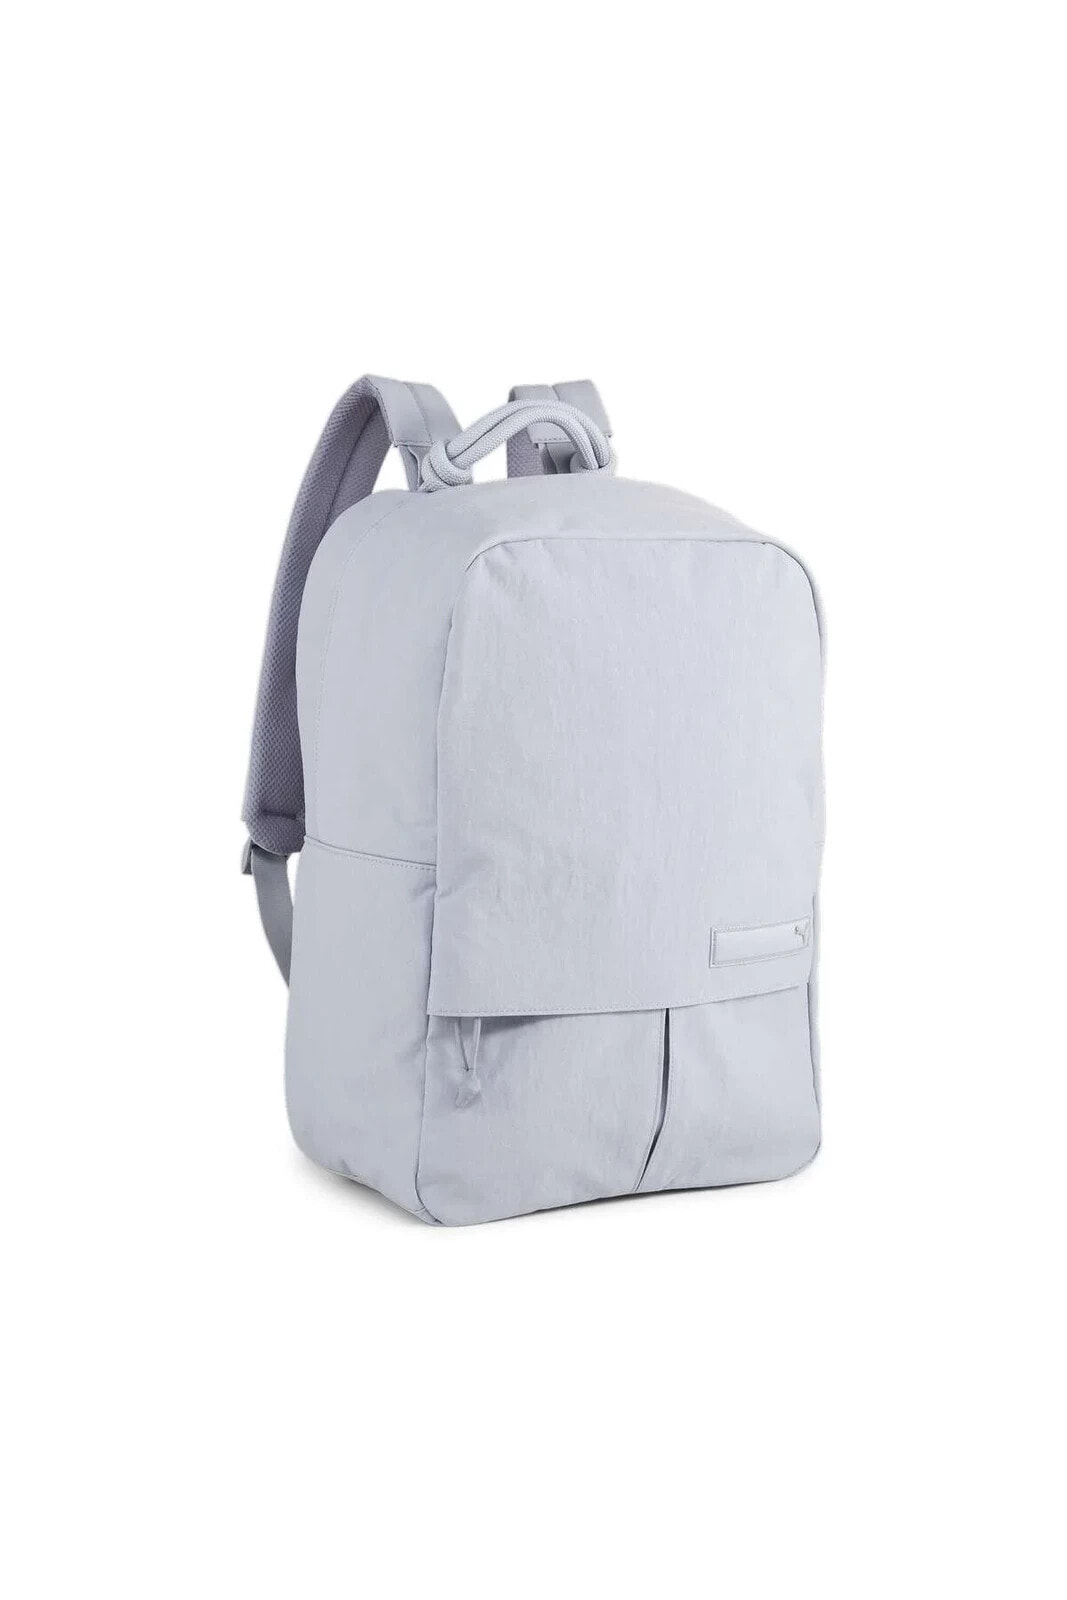 BL Medium Backpack